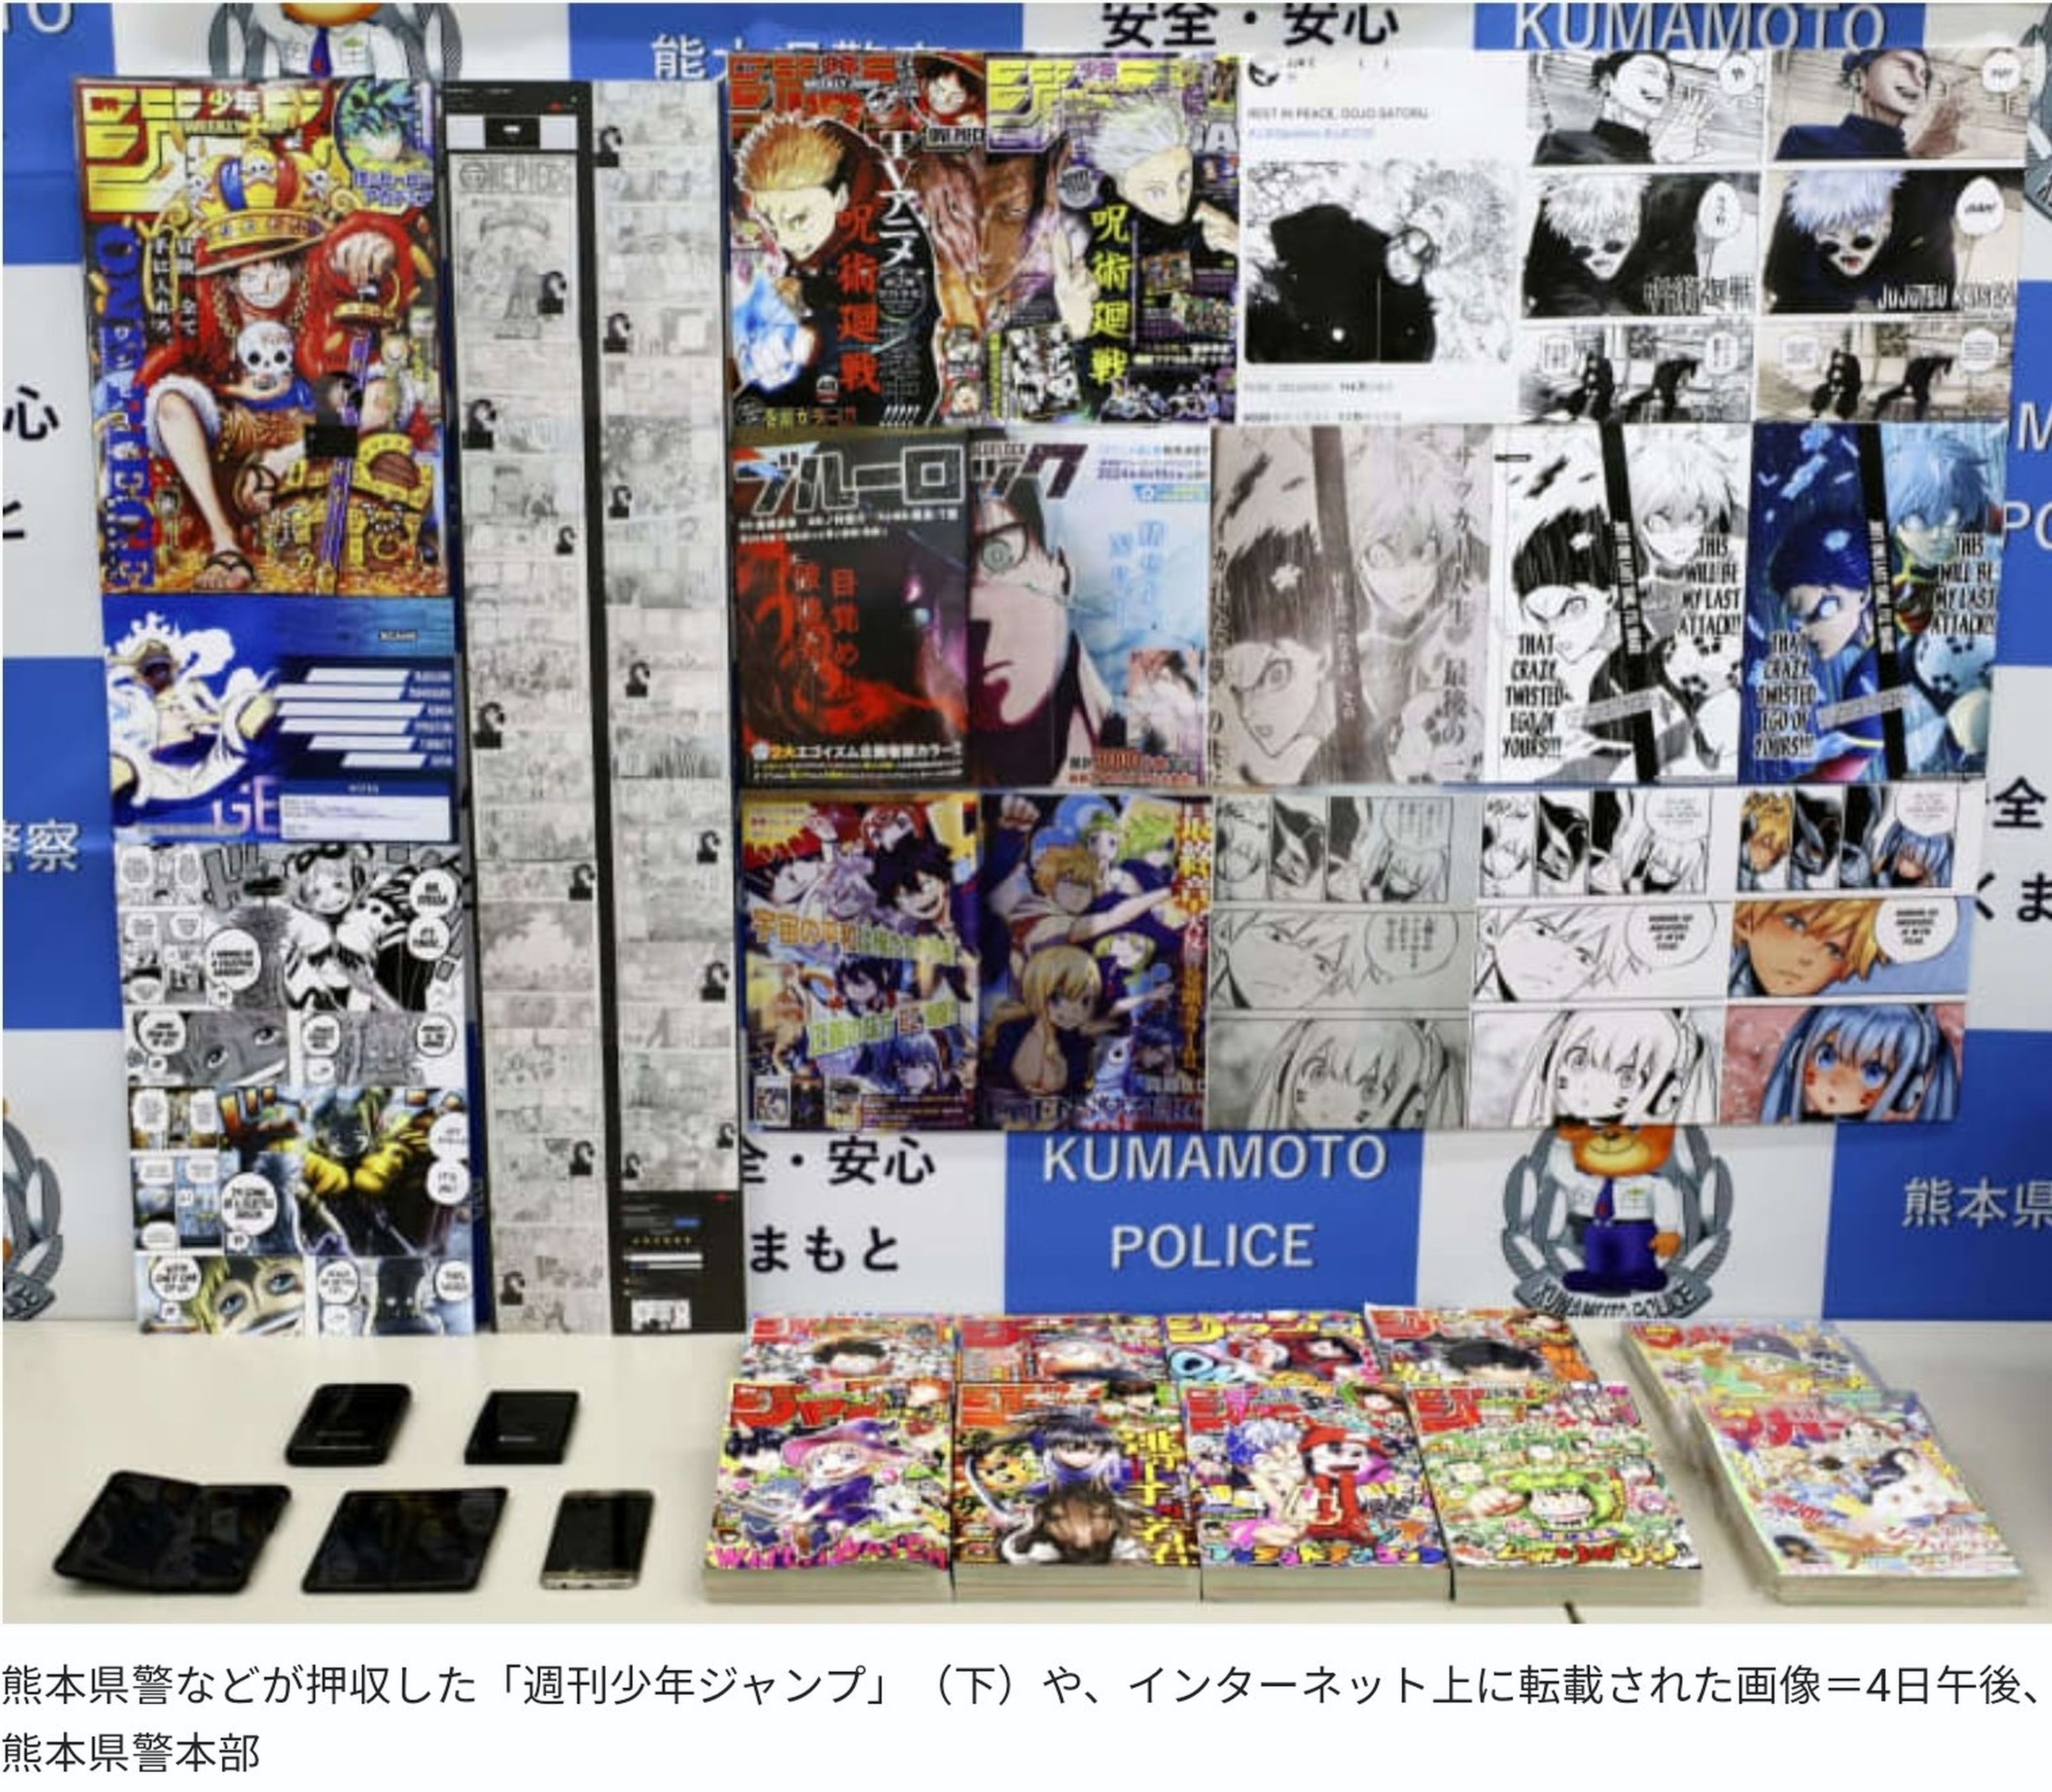 La policía defiende a Dragon Ball Super - Duro golpe contra la piratería del manga con detenciones en Japón